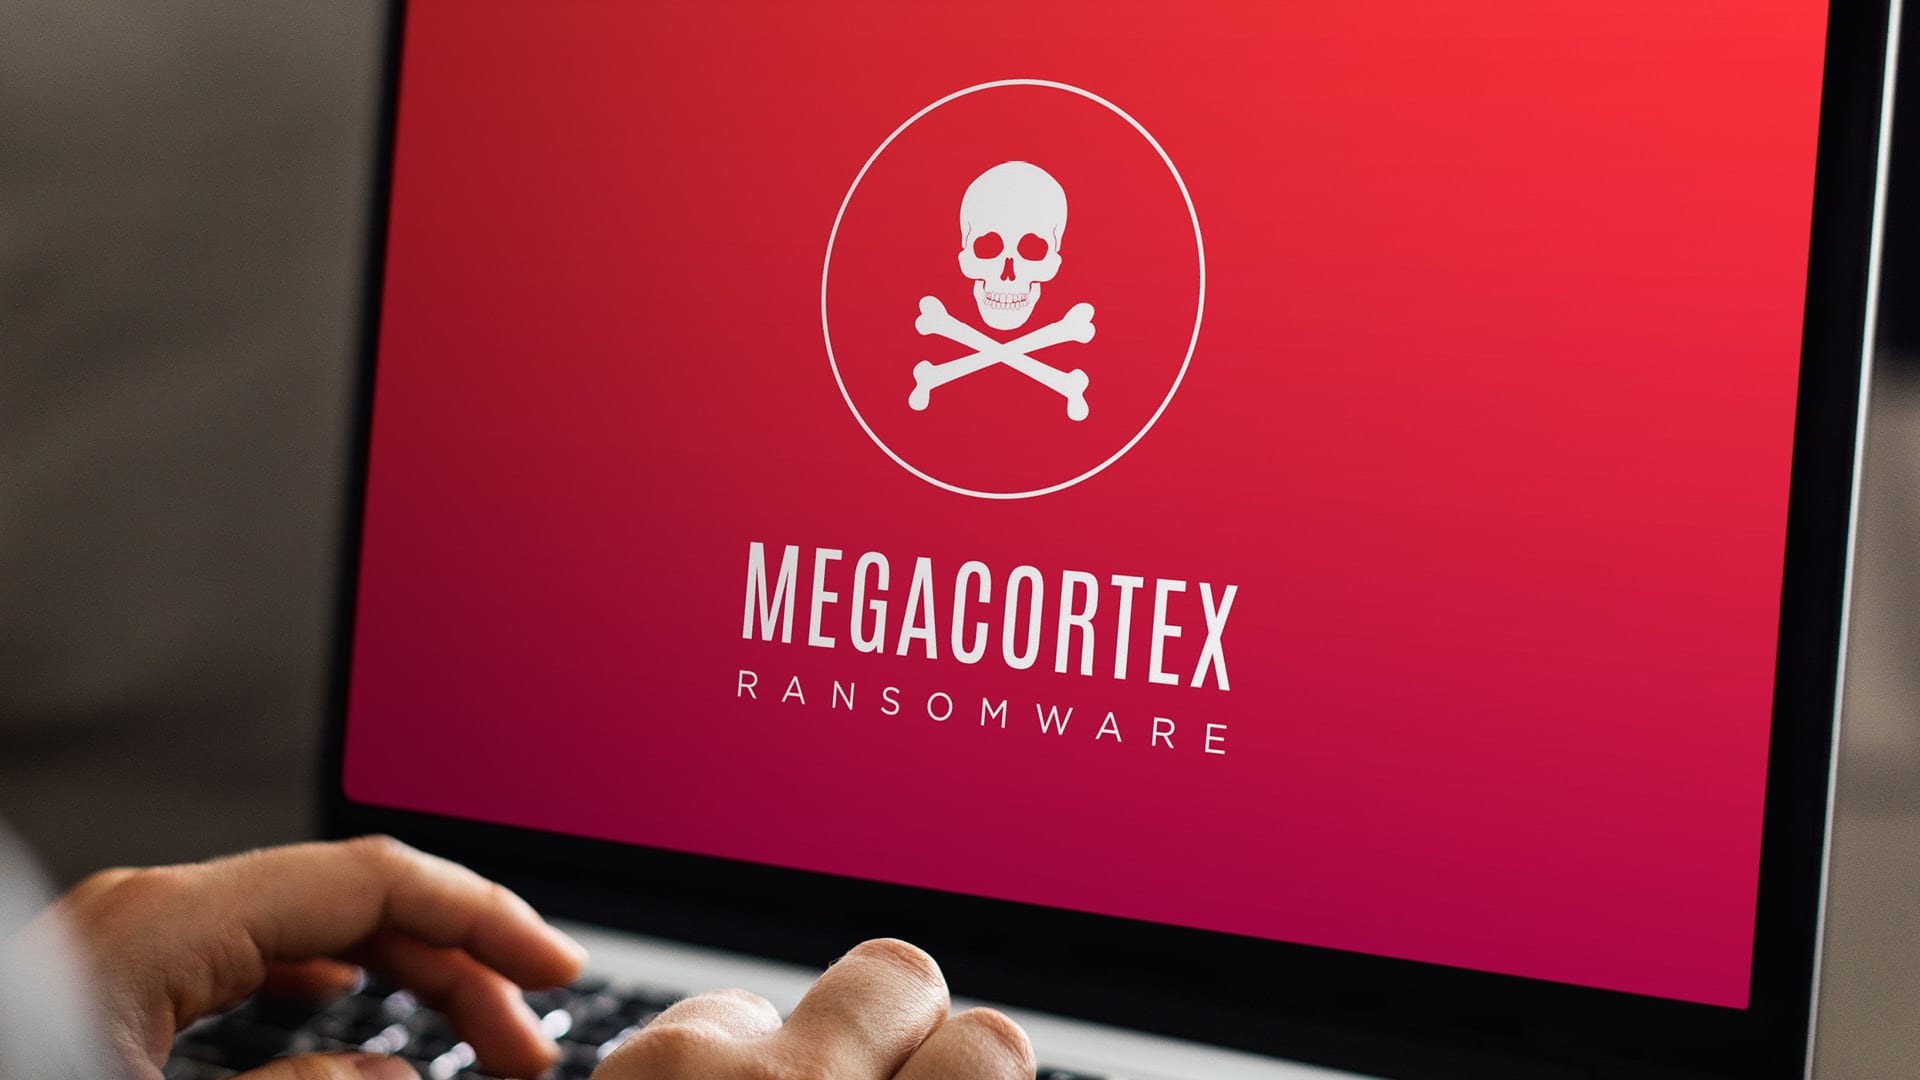 Megacortex verandert wachtwoorden in Windows